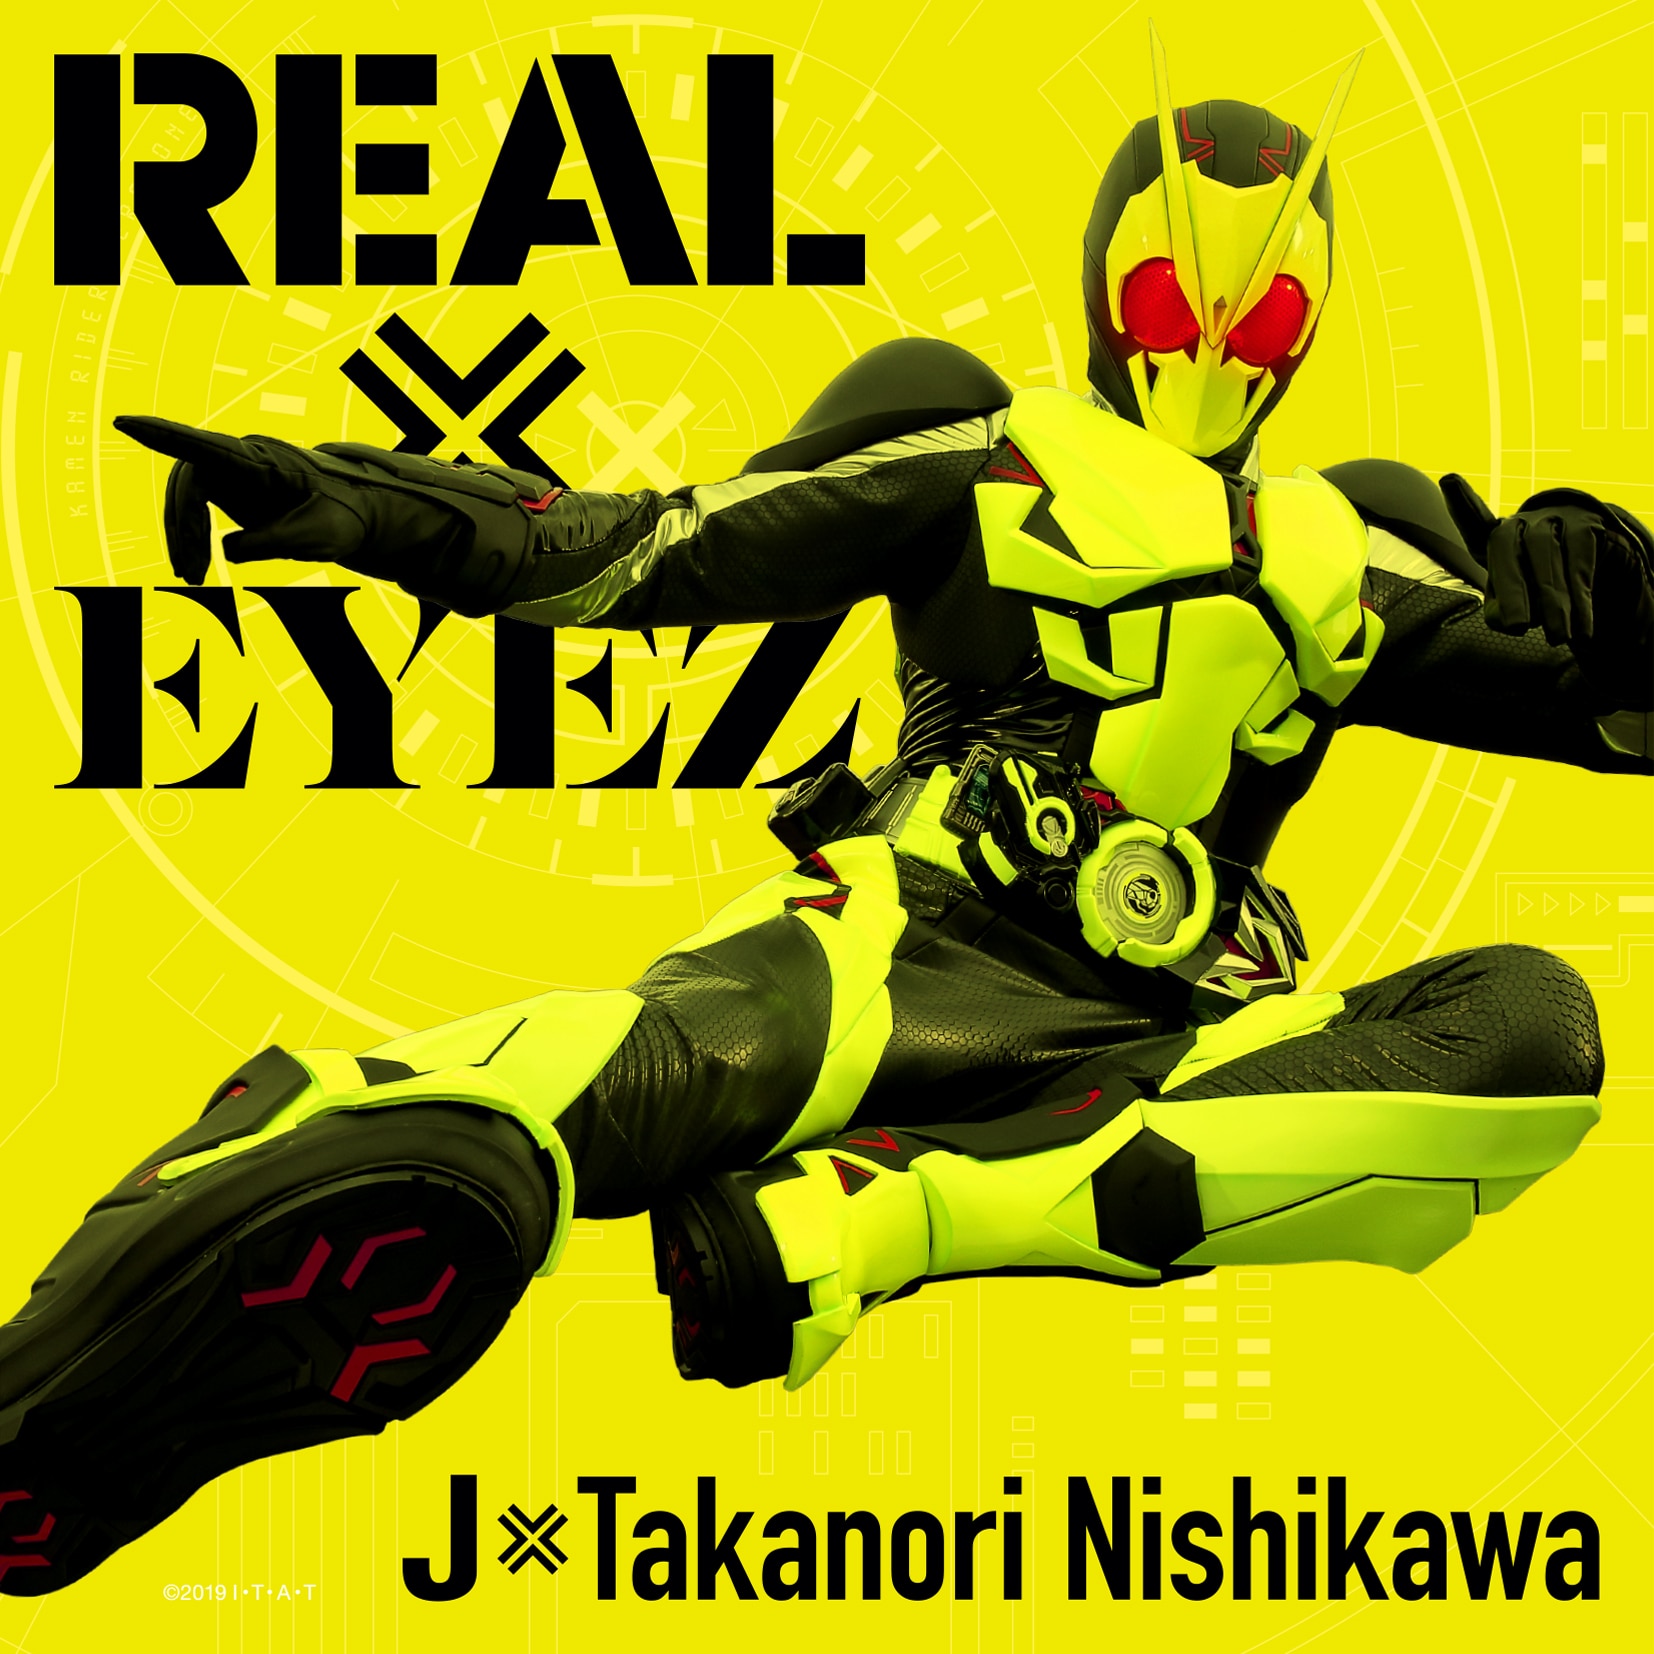 仮面ライダーゼロワン主題歌 Real Eyez Kamen Rider Disc 仮面ライダー Avex Sound Web